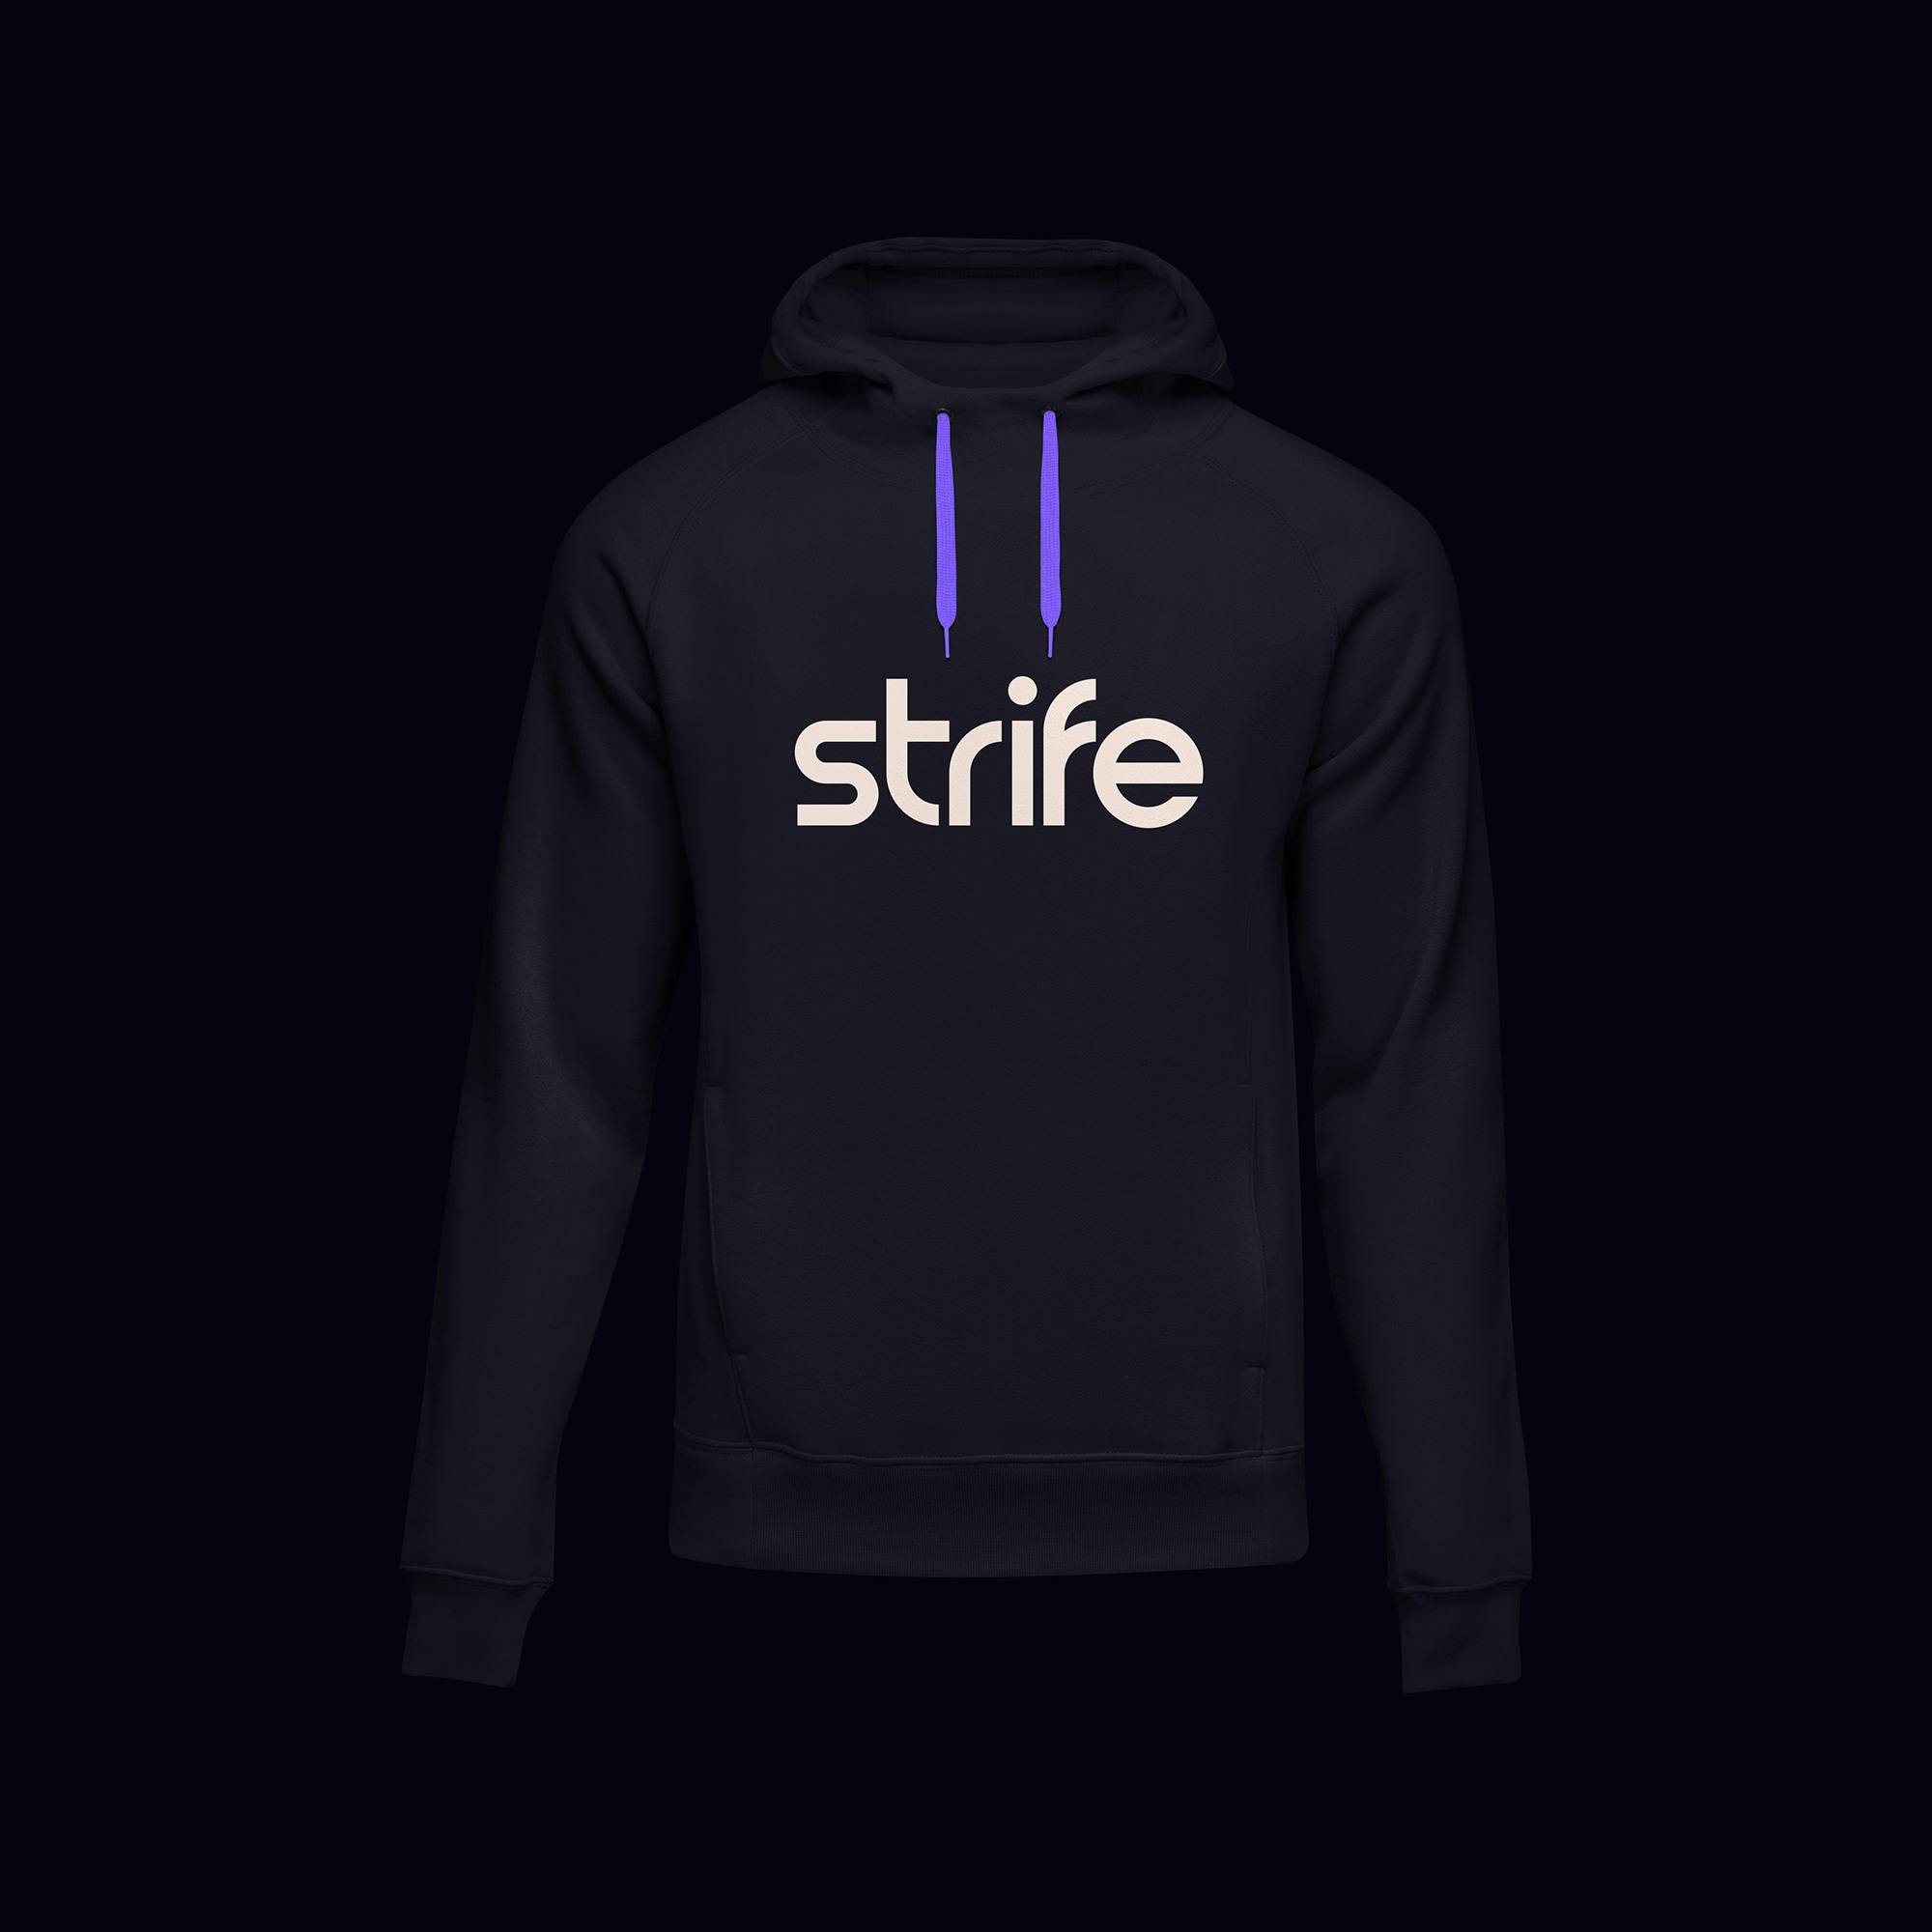 Strife hoodie